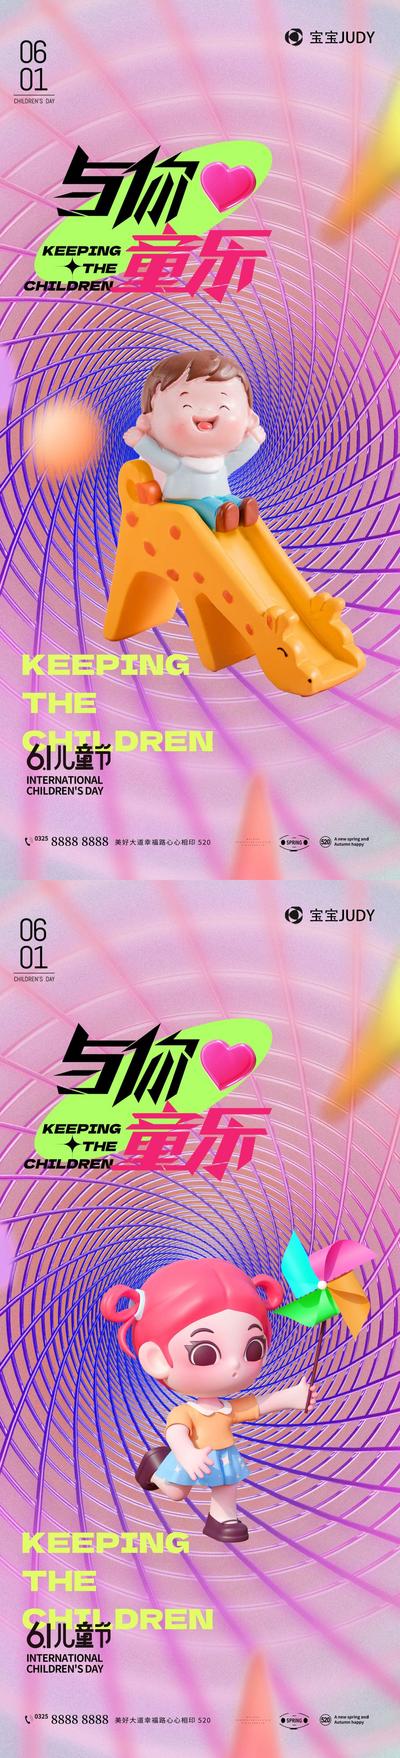 【南门网】地产 节日 孩子 6.1 儿童节 刷屏 清新 时尚 梦想 炫彩 欢乐 童趣